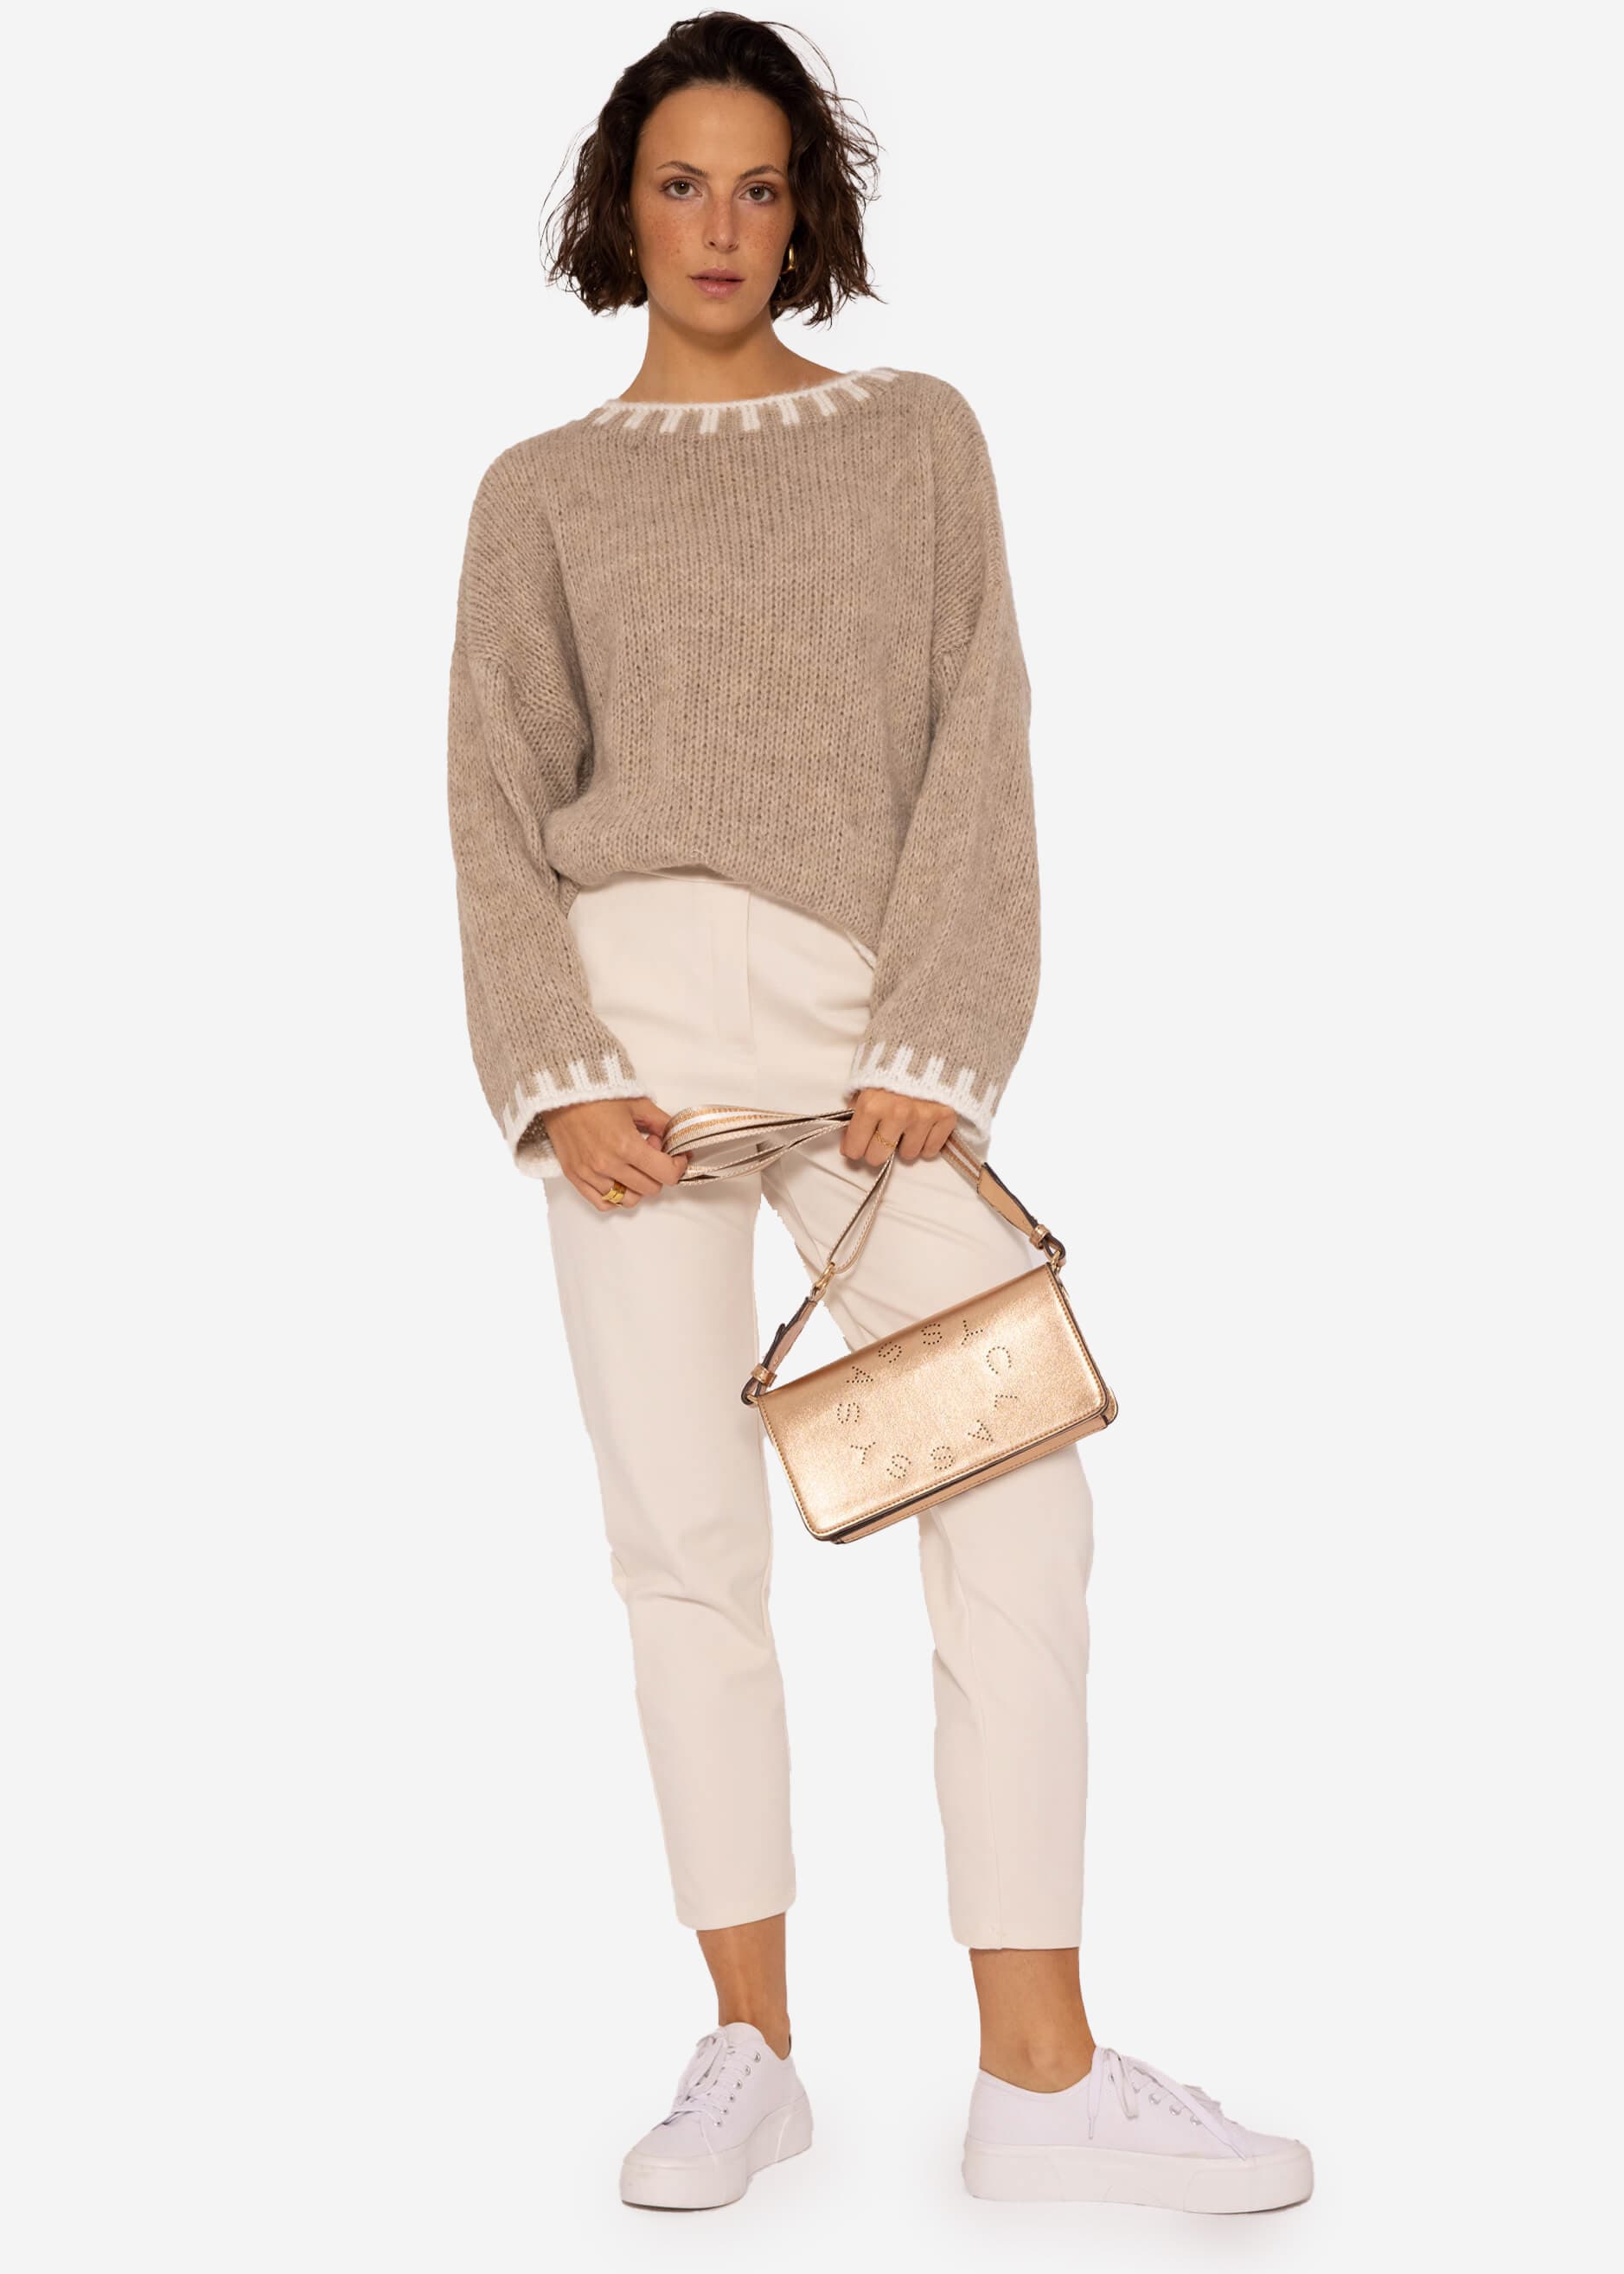 Pullover mit offwhite Details, beige | Pullover | Bekleidung | SASSYCLASSY